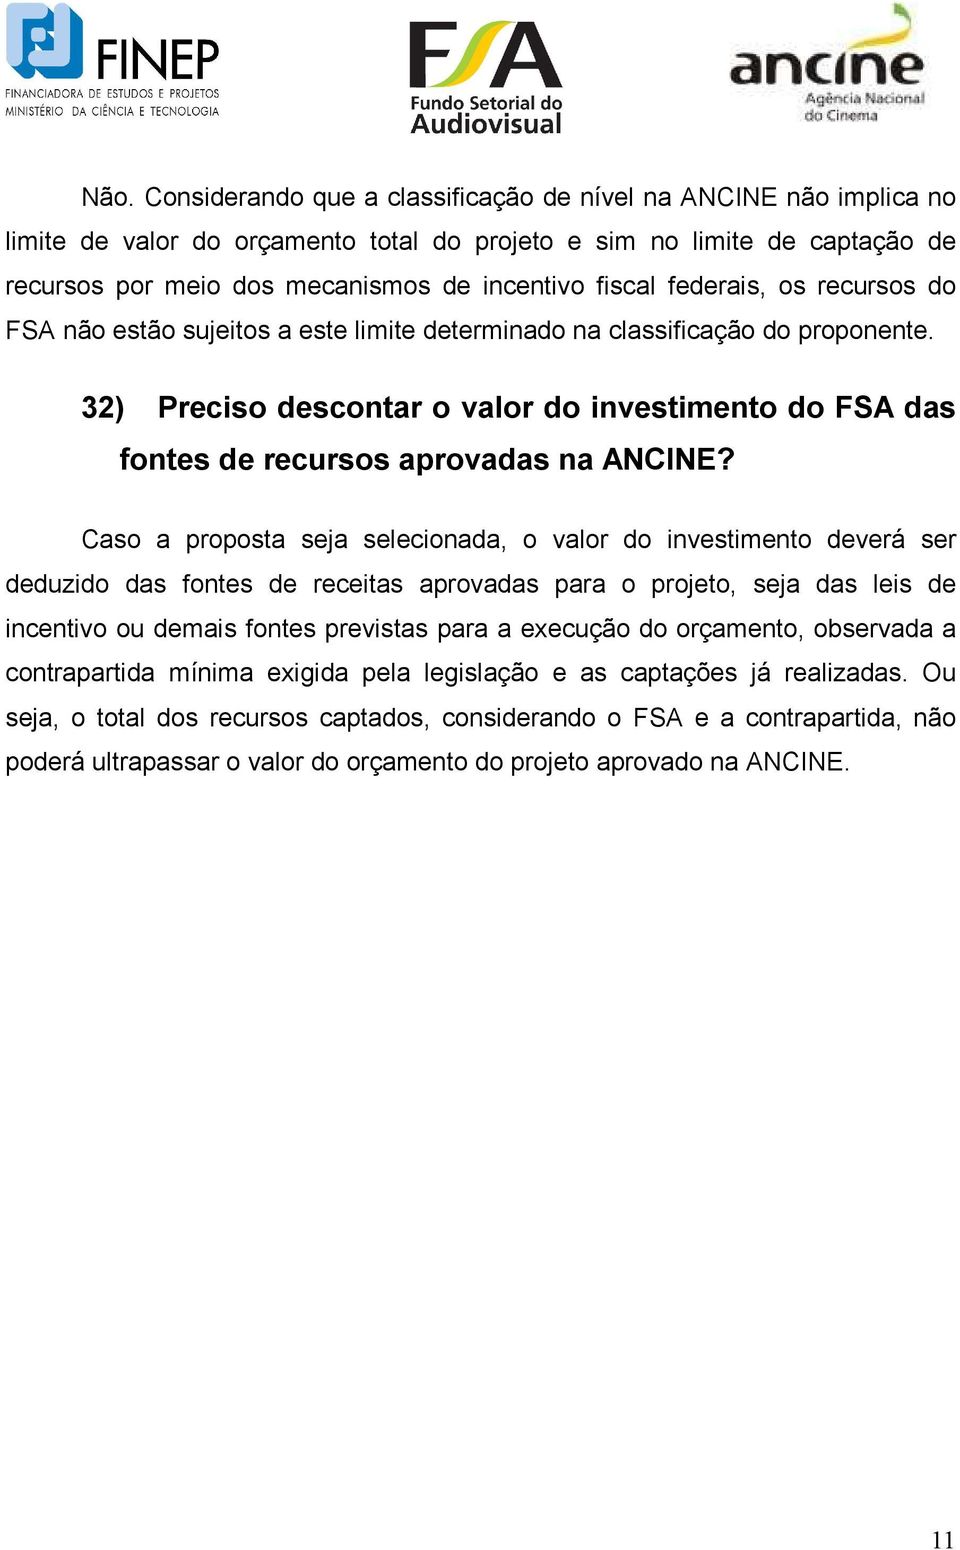 32) Preciso descontar o valor do investimento do FSA das fontes de recursos aprovadas na ANCINE?